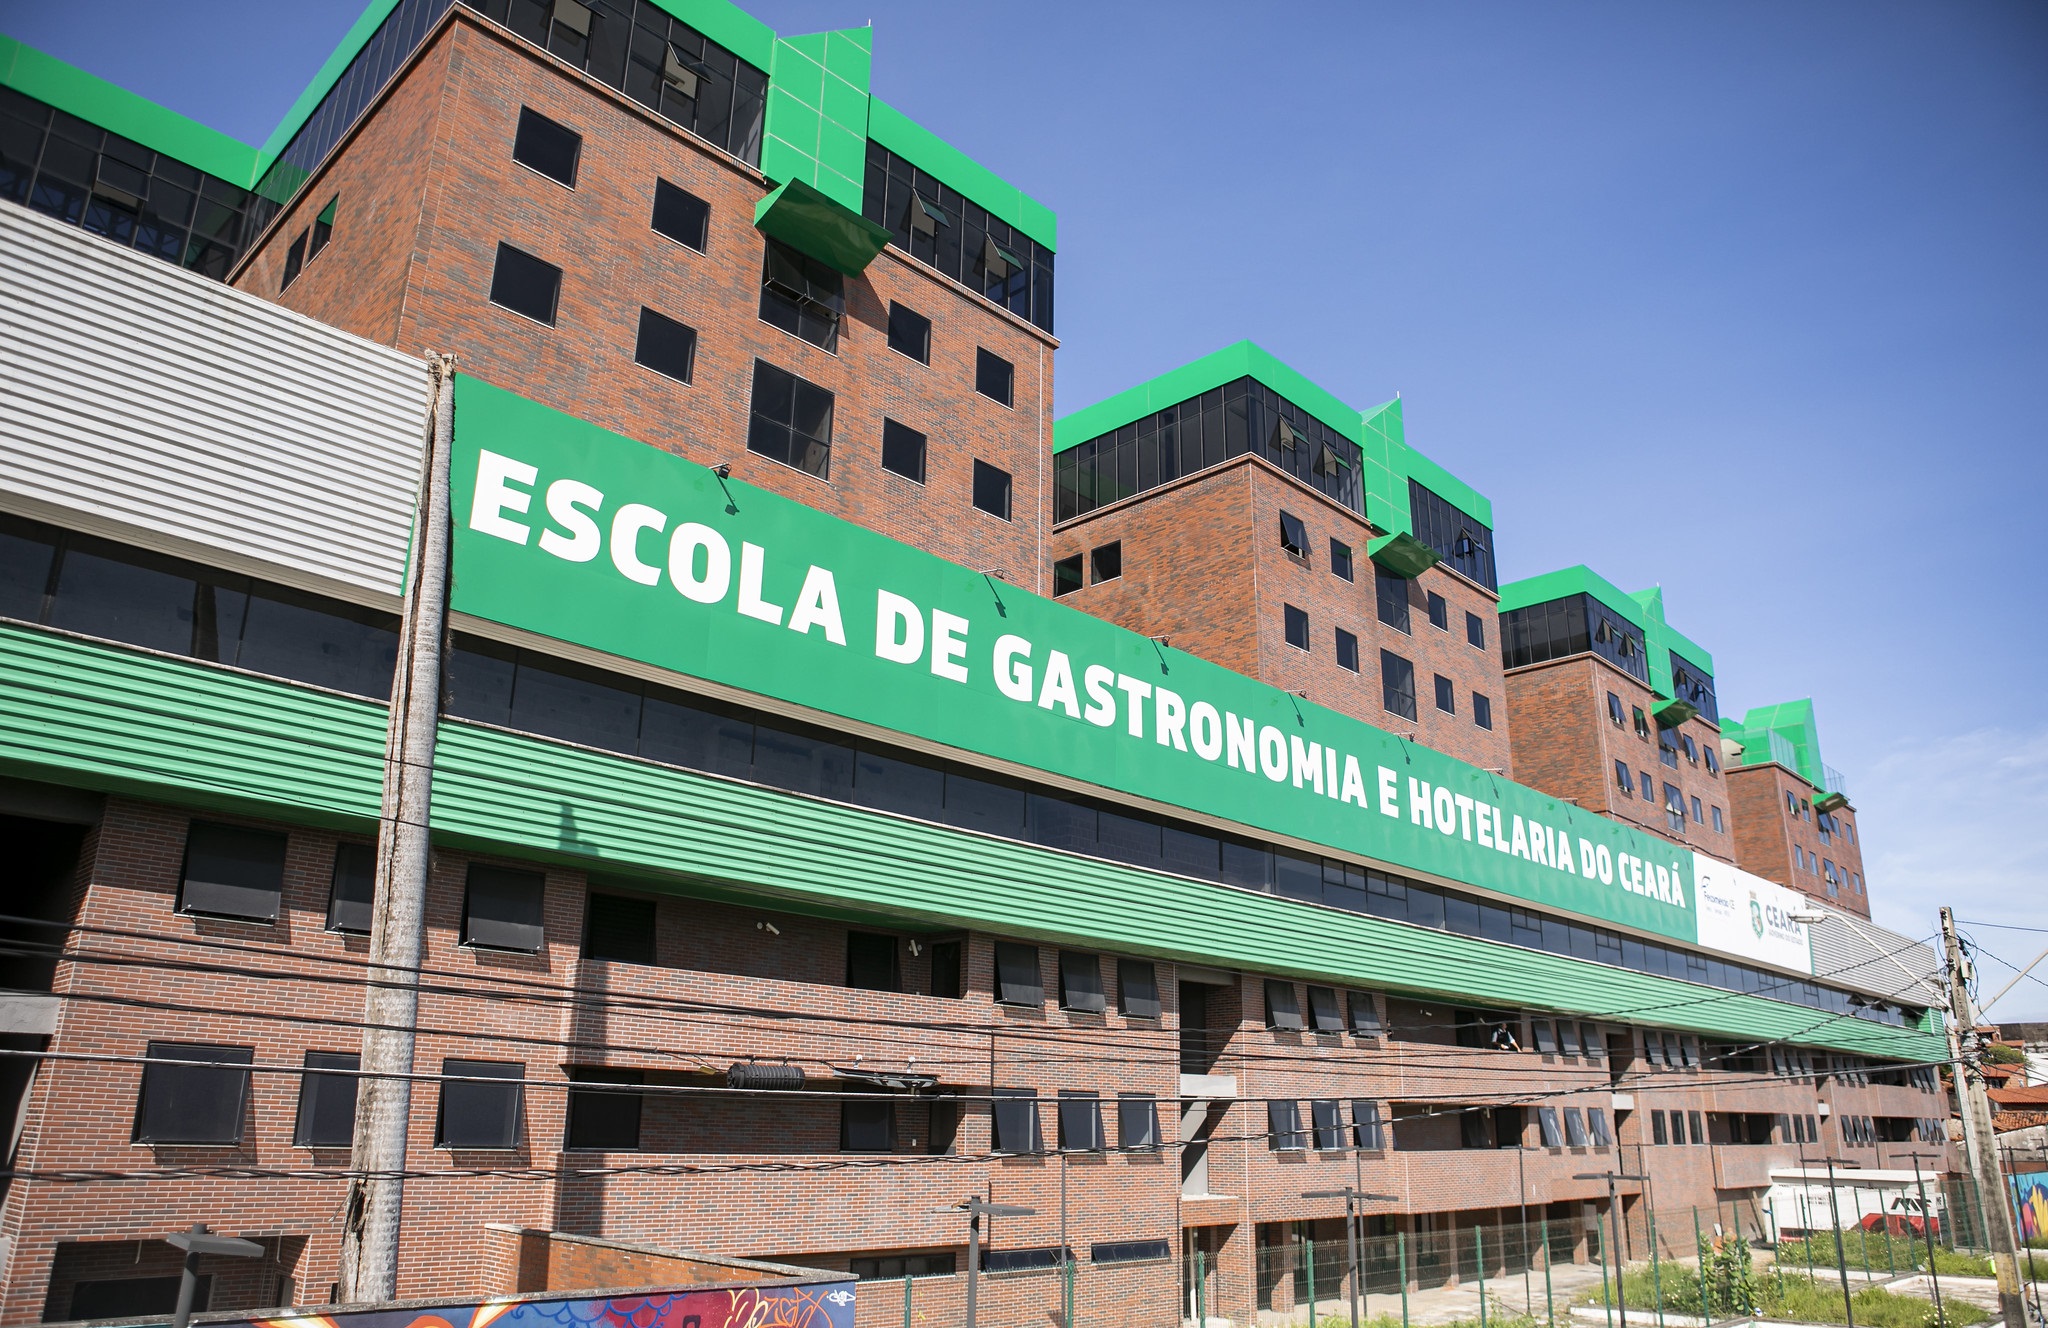 Sistema Fecomércio inaugura 2ª etapa da Escola de Gastronomia e Hotelaria do Ceará